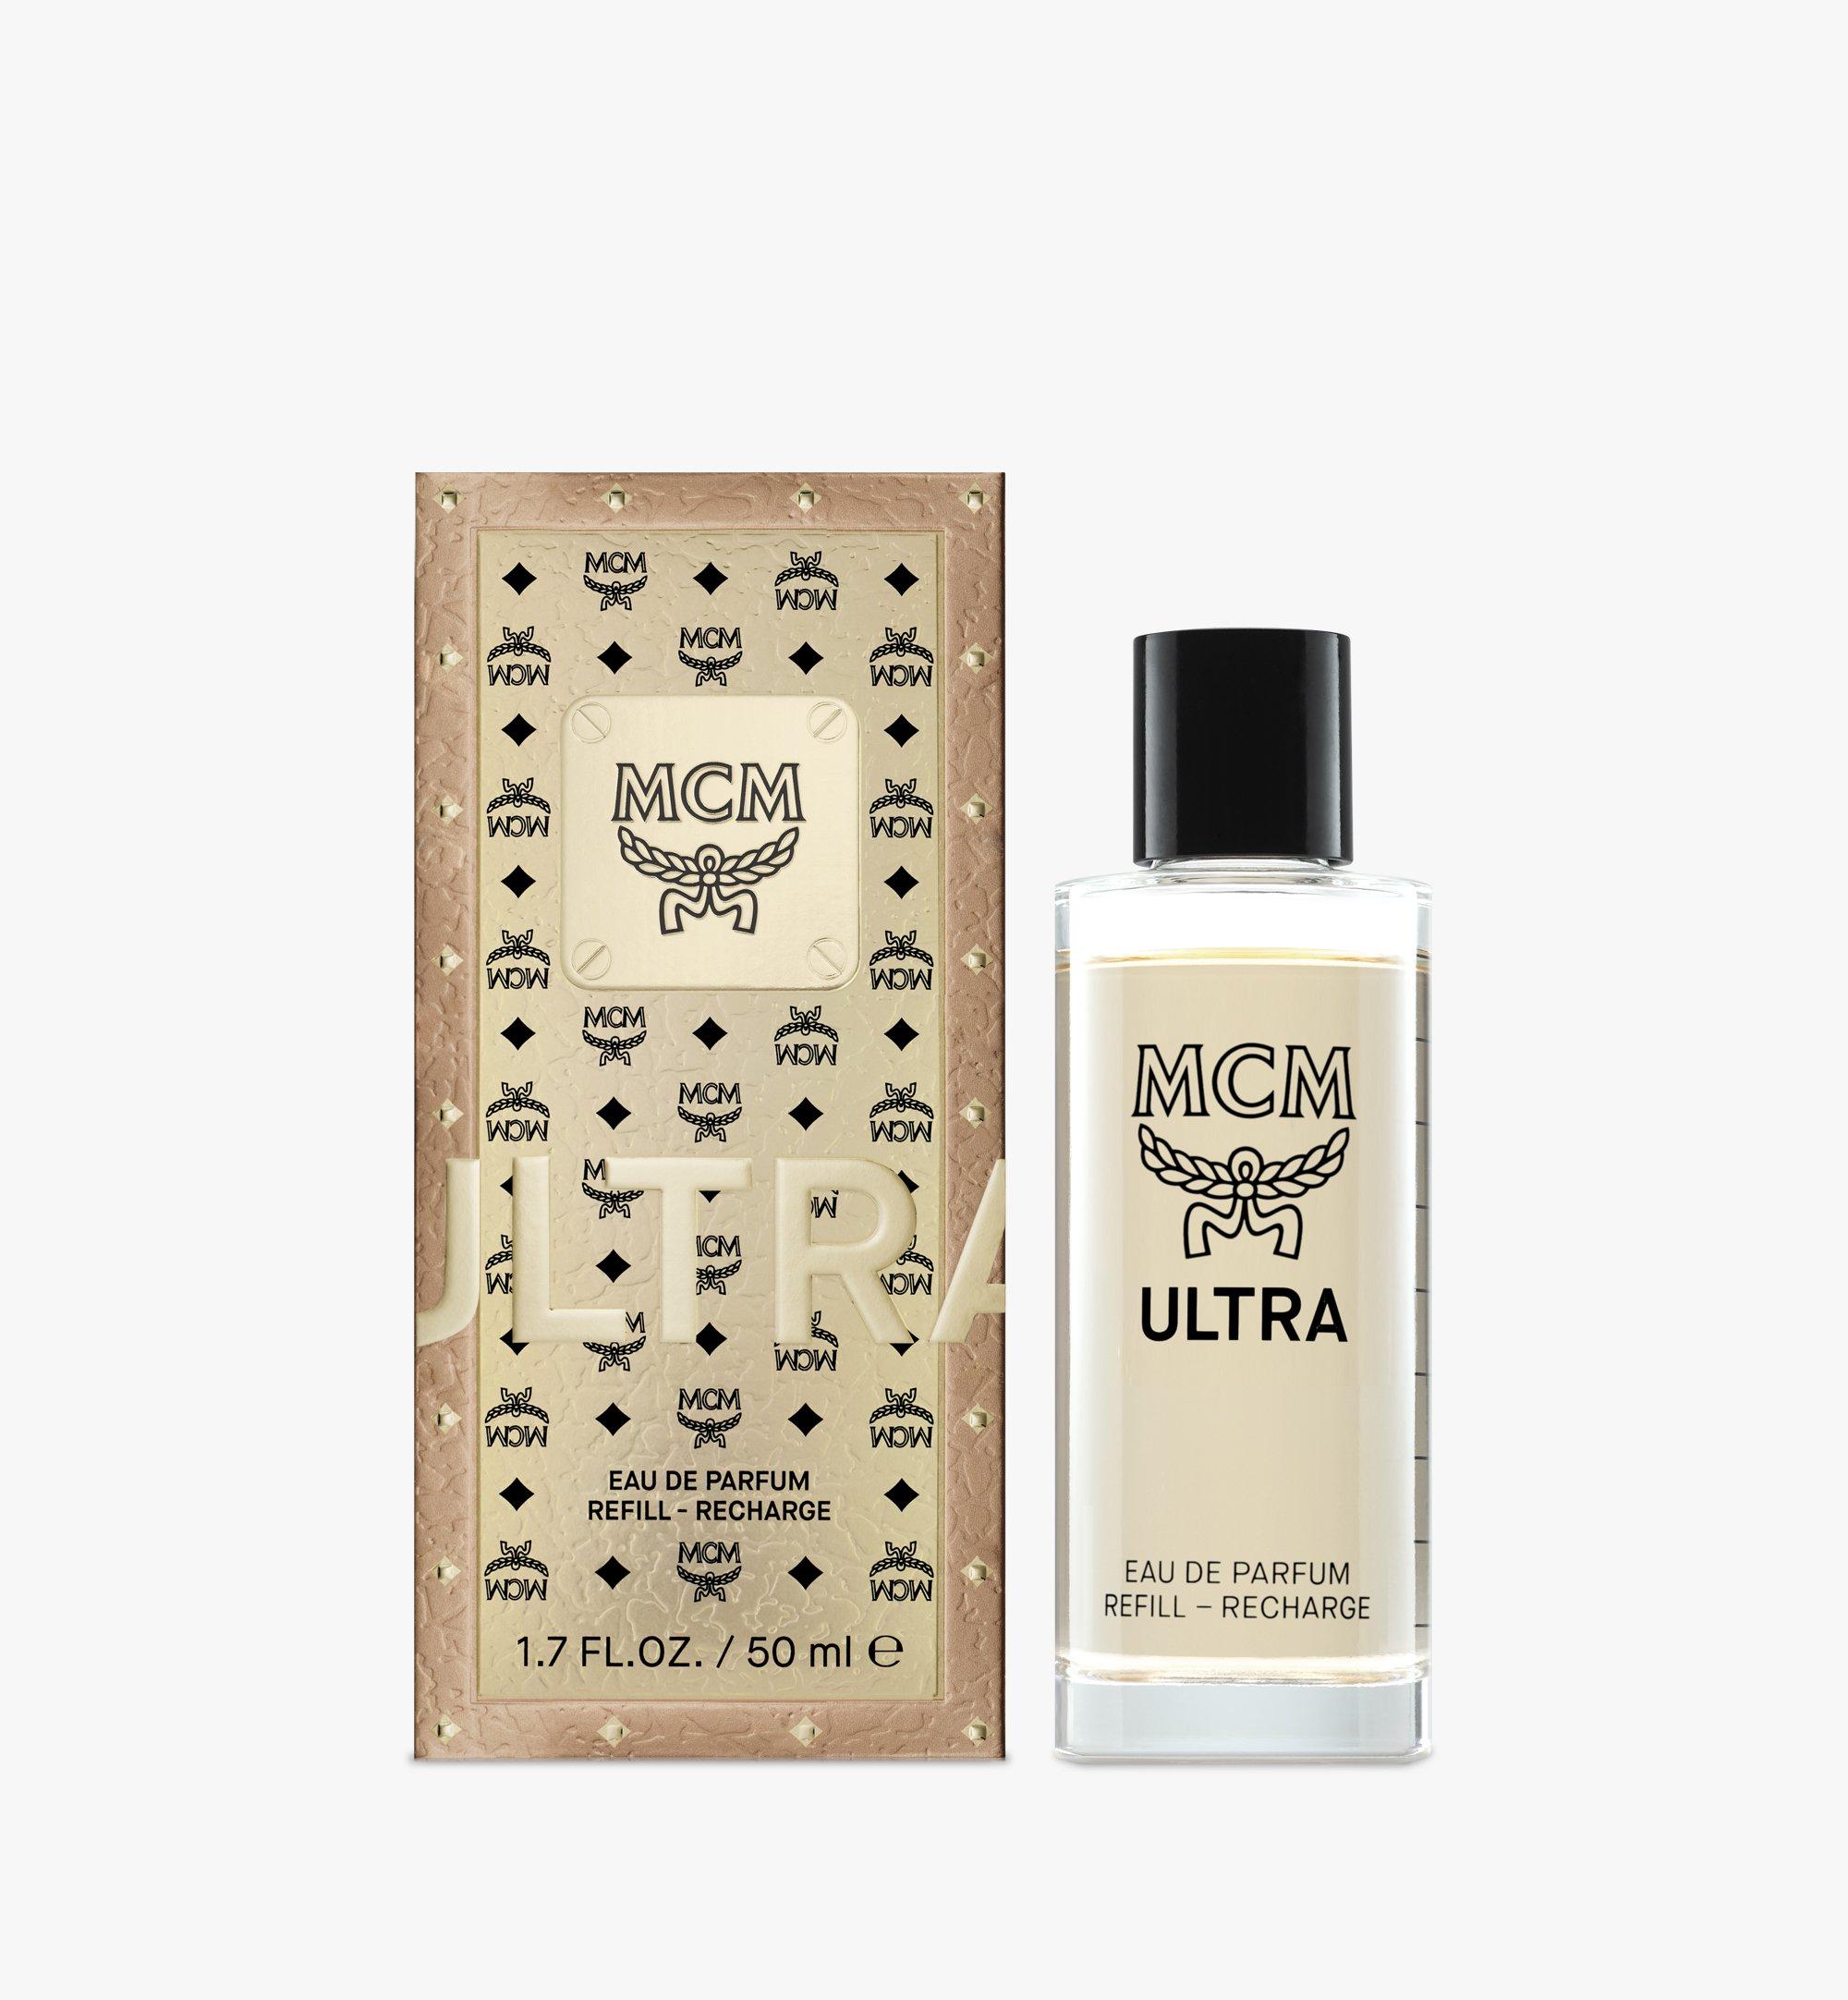 MCM Ultra Eau de Parfum Refill Kit